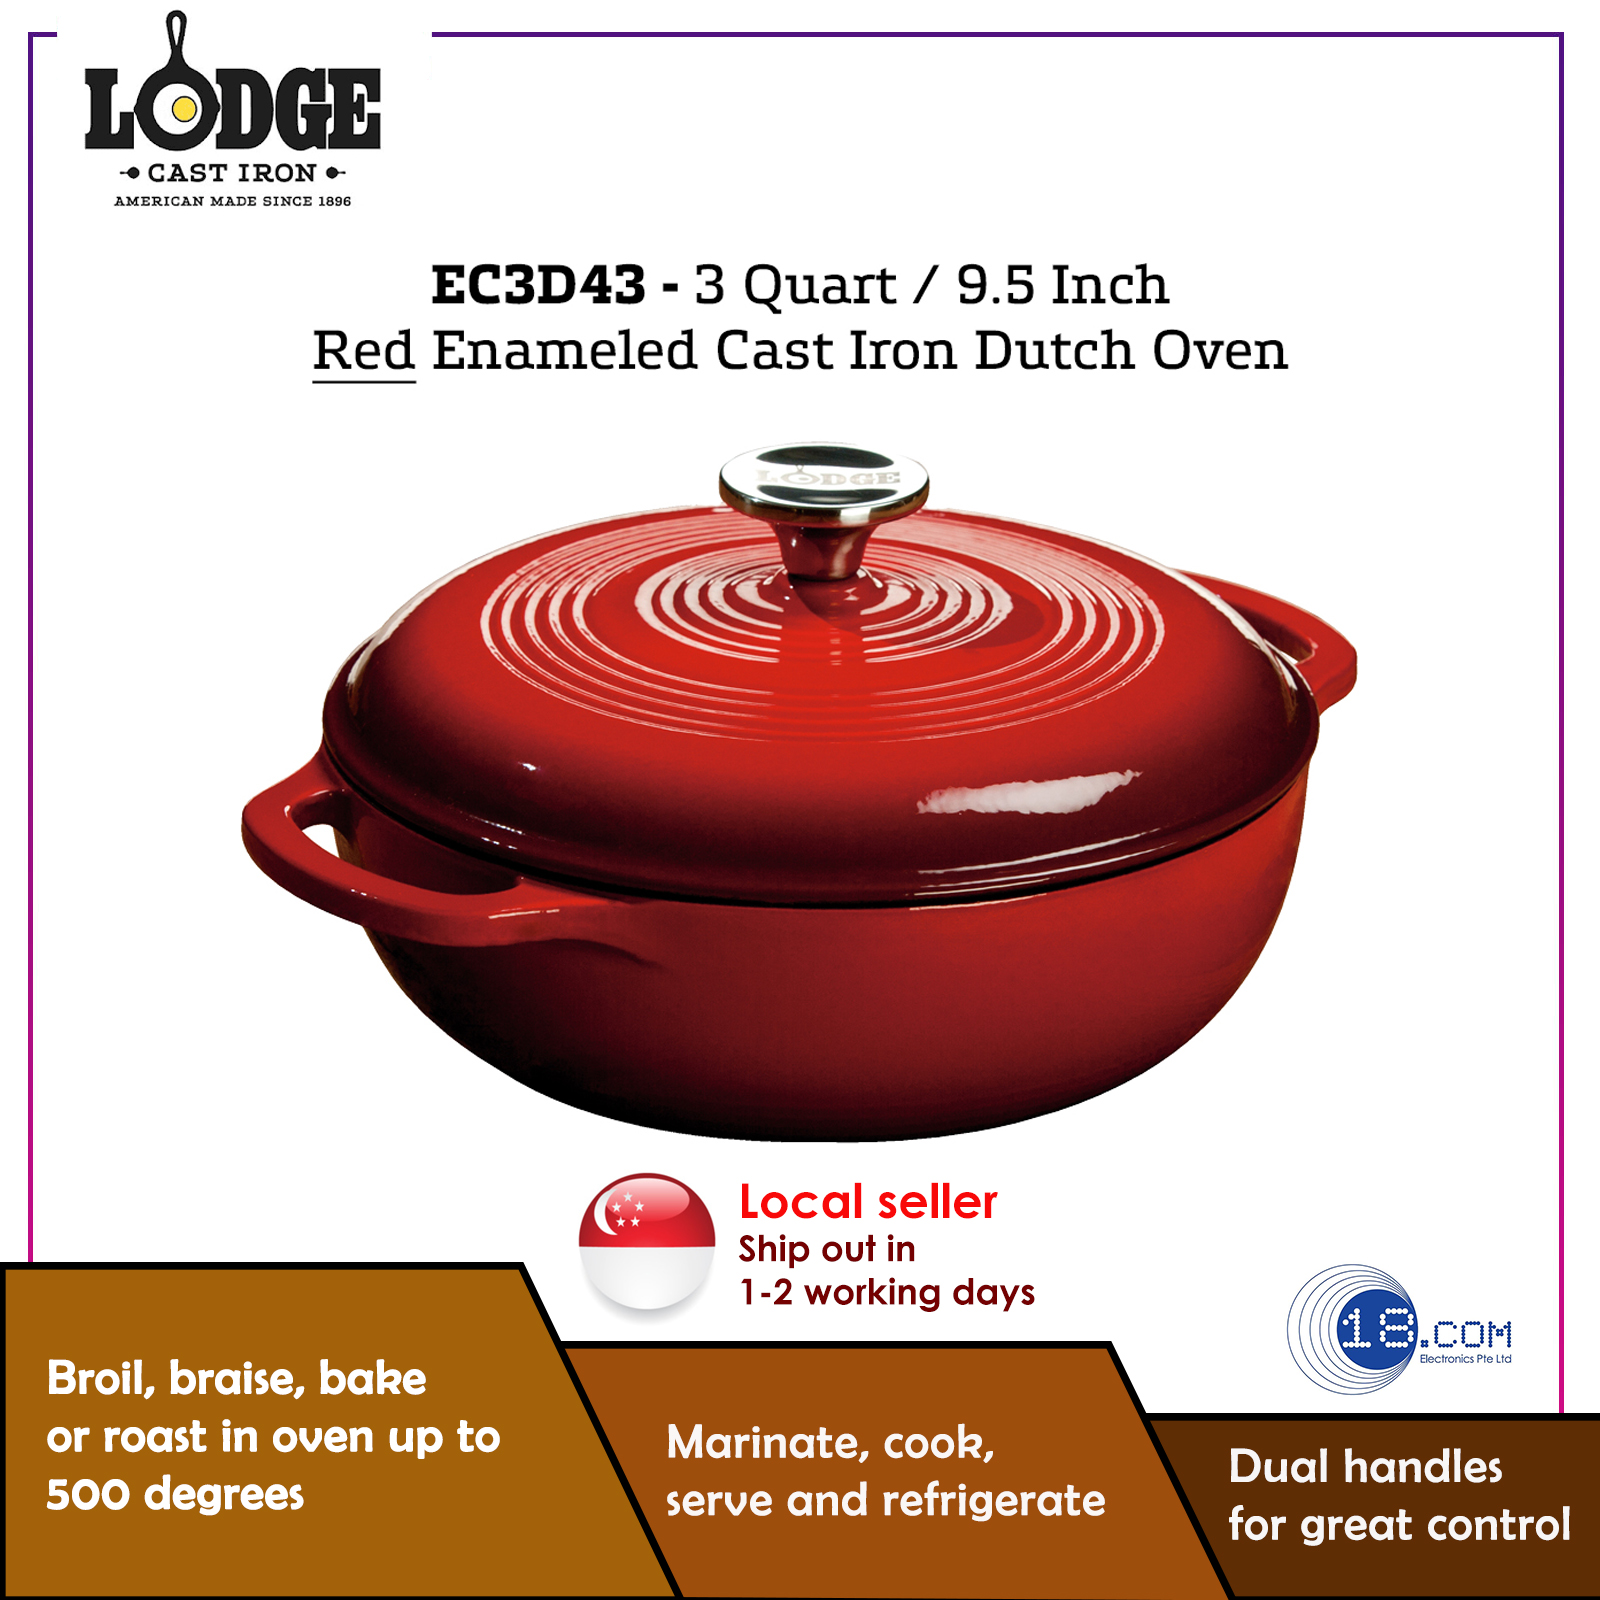 Lodge EC3CC43 3.6 Qt. Red Porcelain Enameled Cast Iron Round